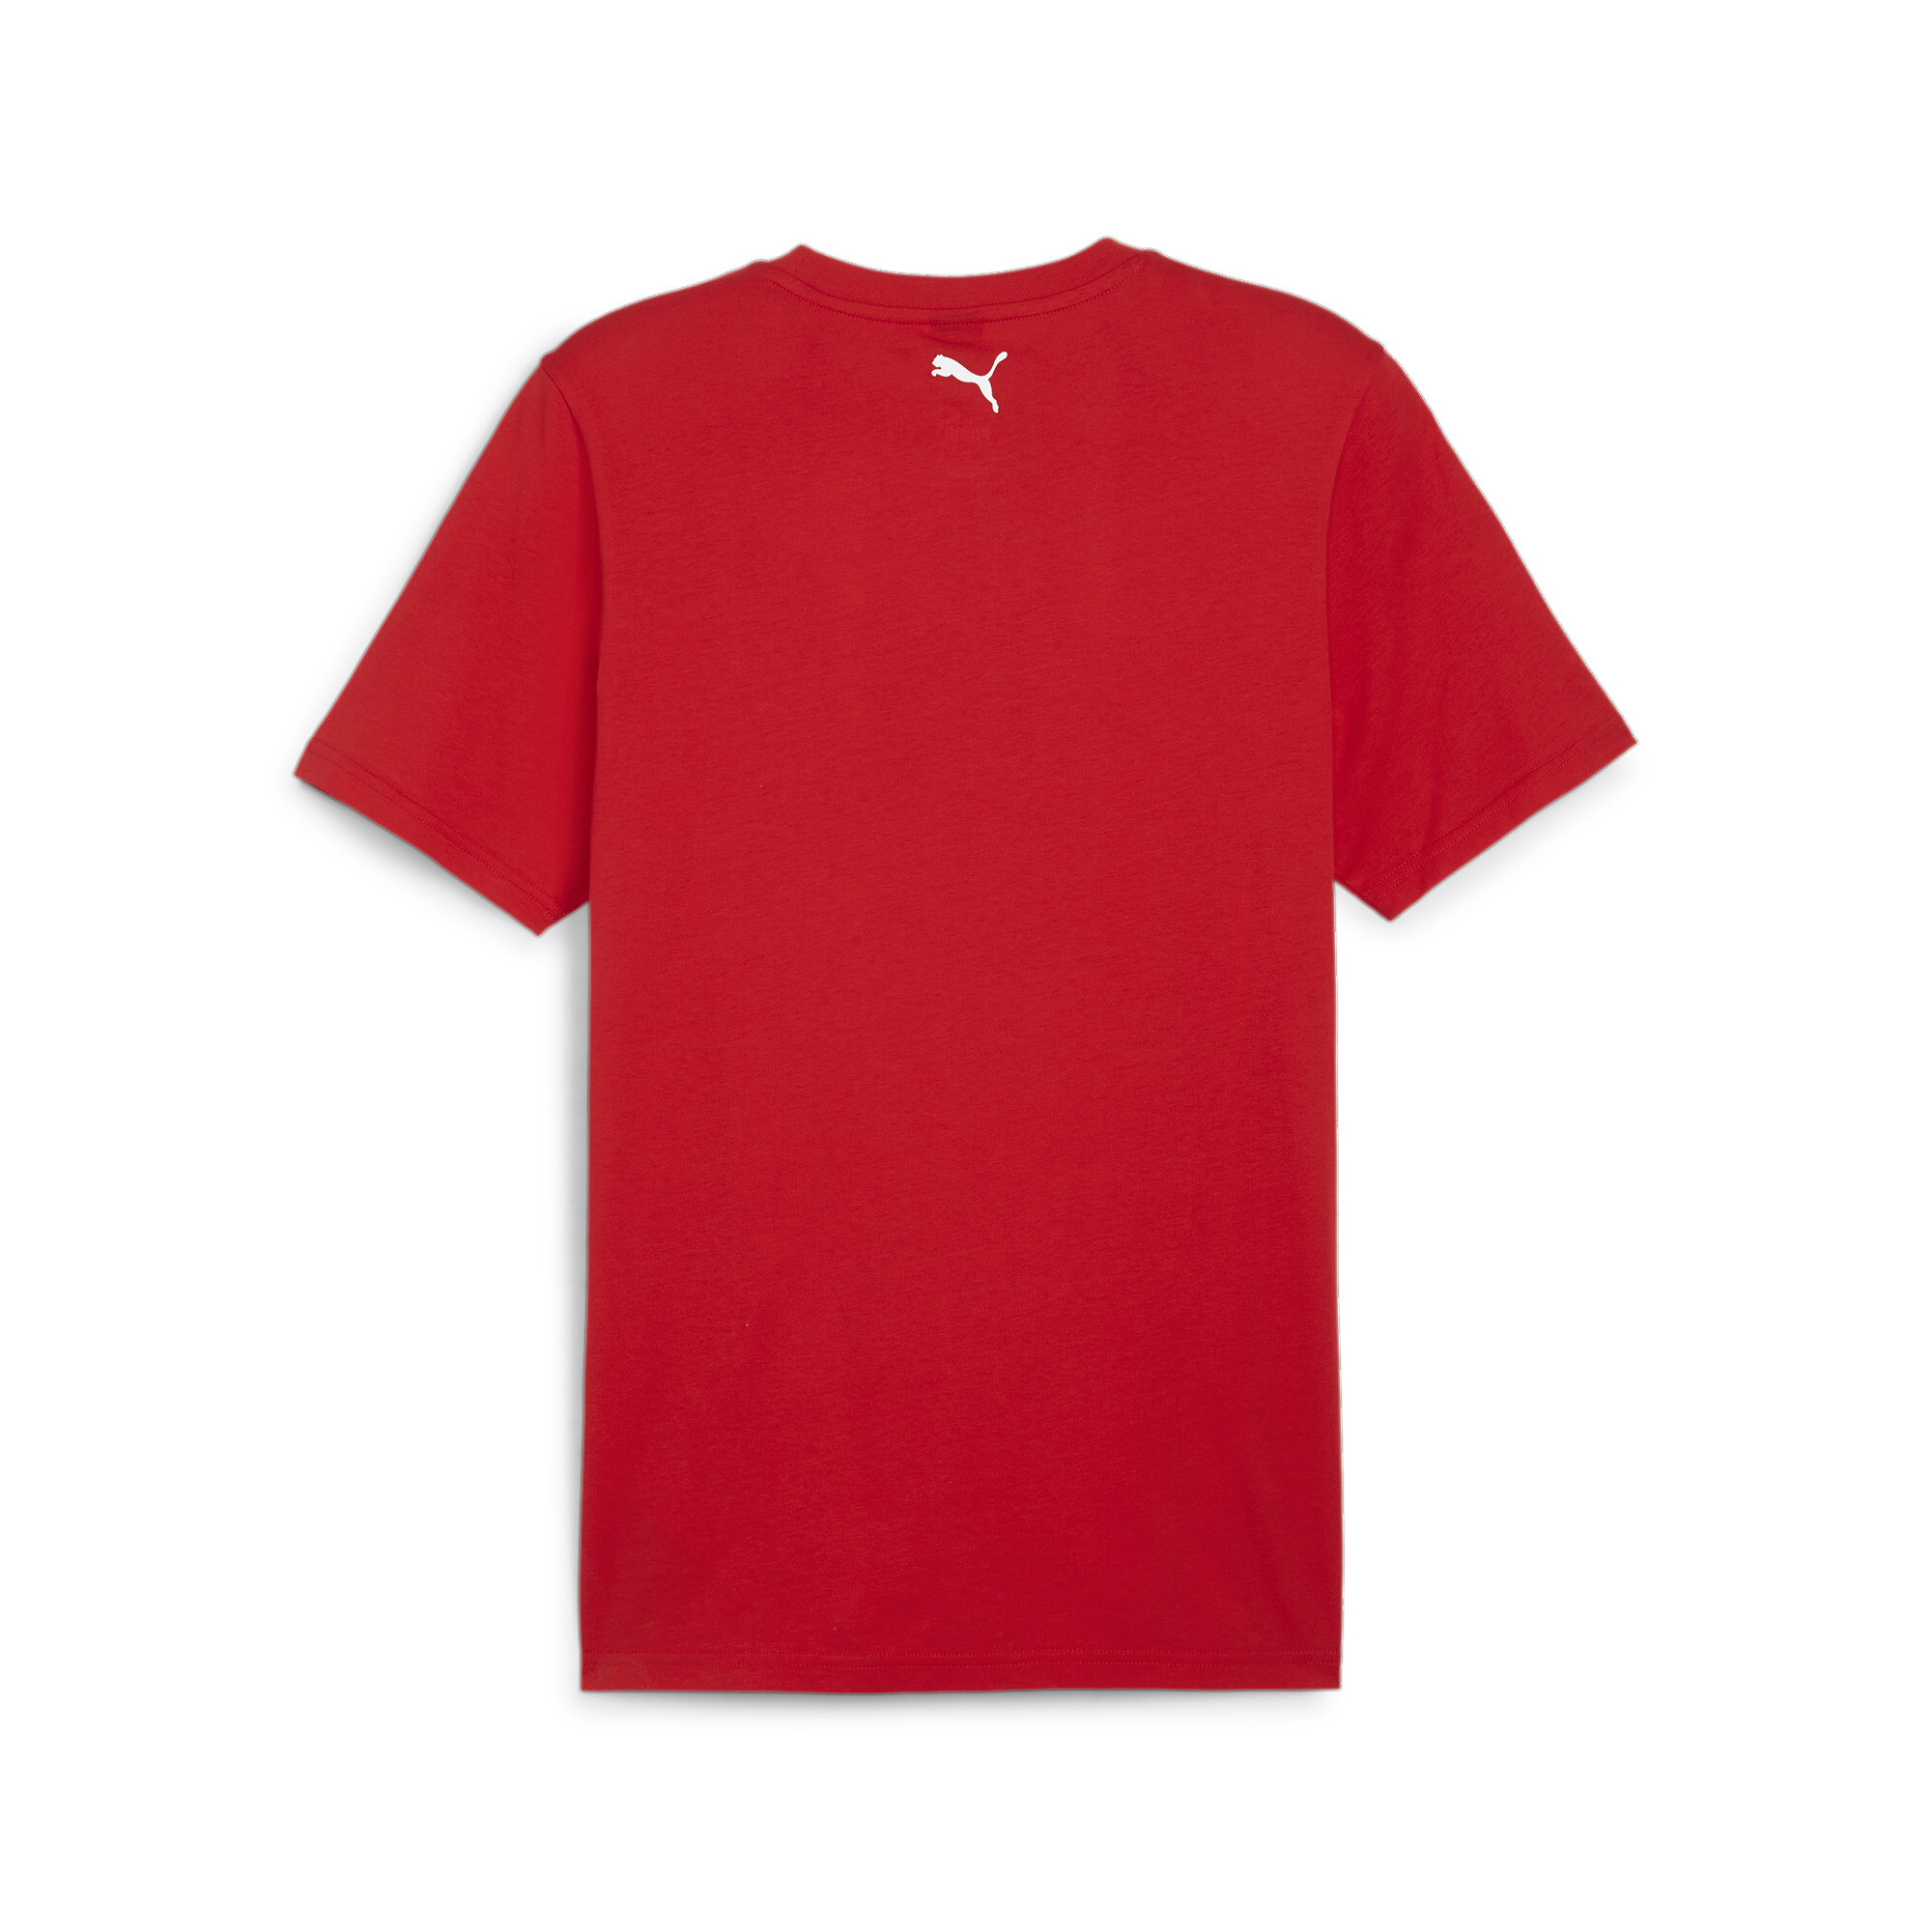 Men's PUMA Scuderia Ferrari Race T-Shirt In Red, Size 2XL